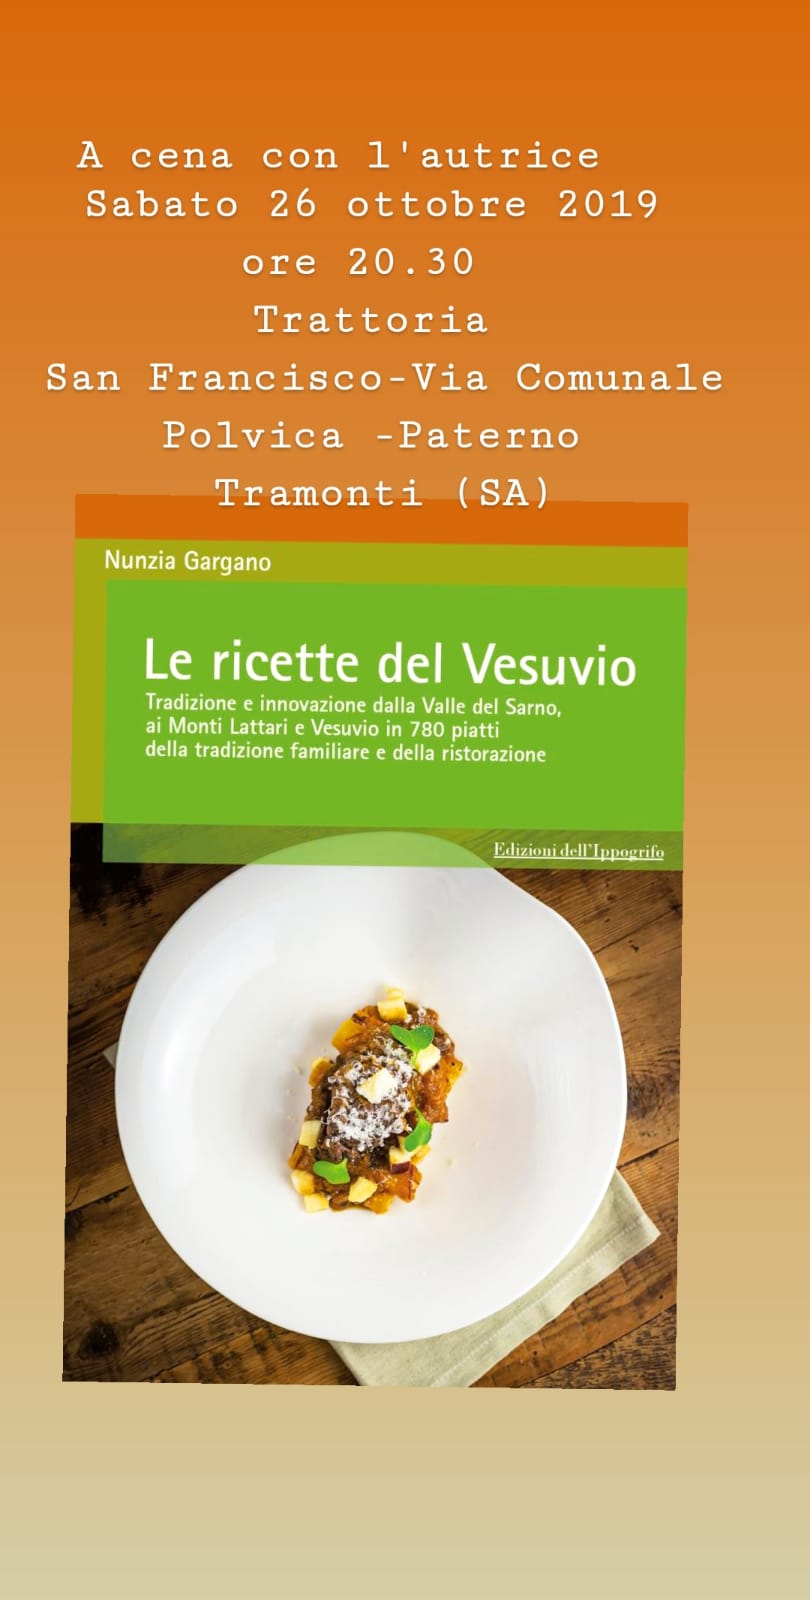 ‘Le ricette del Vesuvio’ di Nunzia Gargano. Sabato 26 ottobre, presentazione del libro a Tramonti